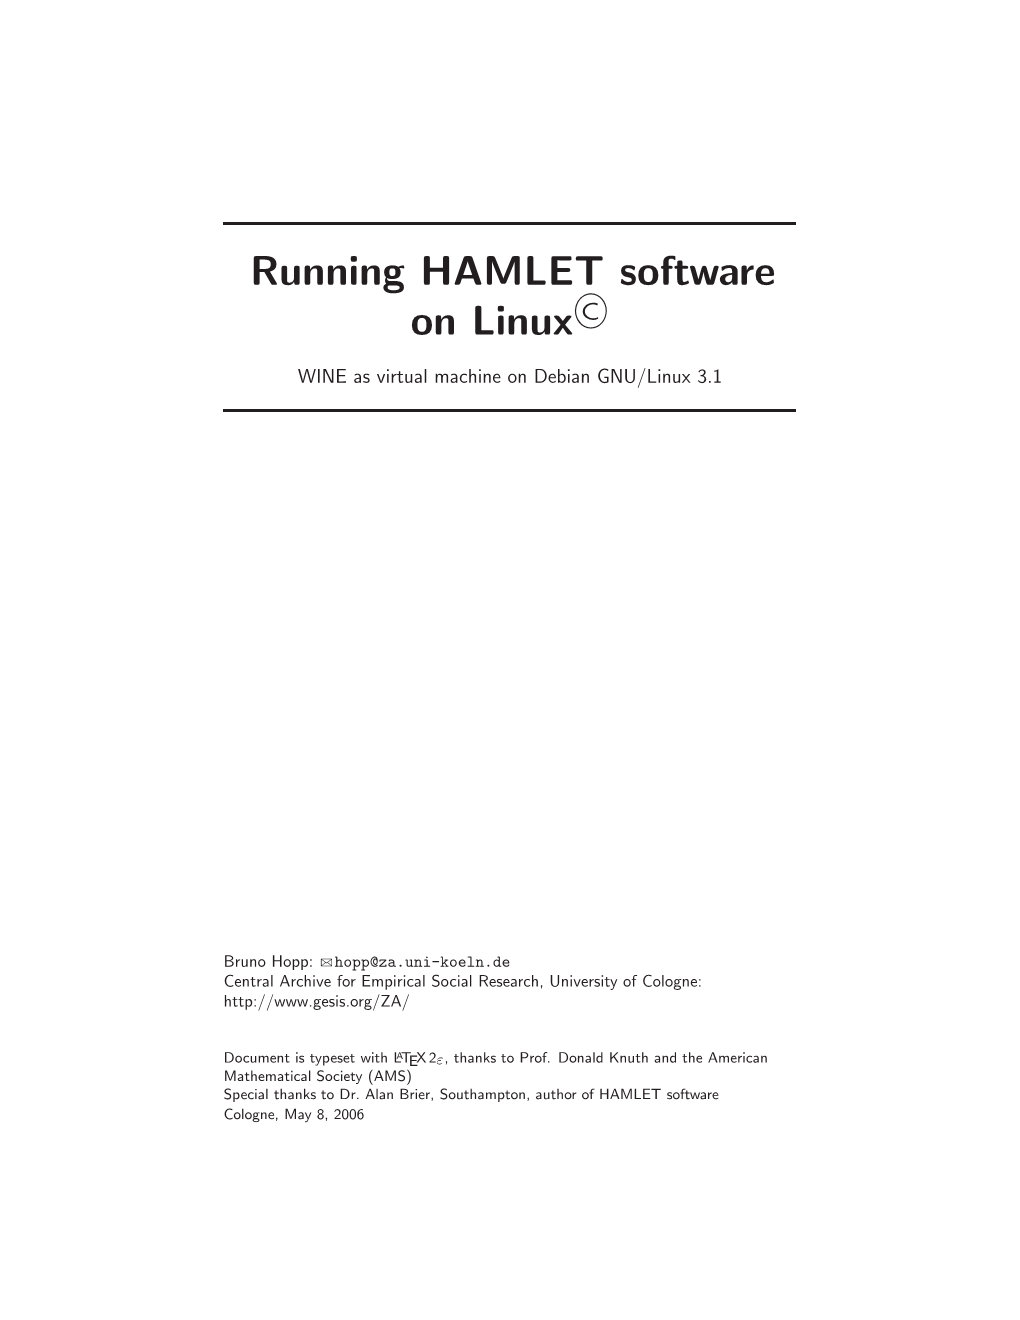 Running HAMLET Software on Linux©